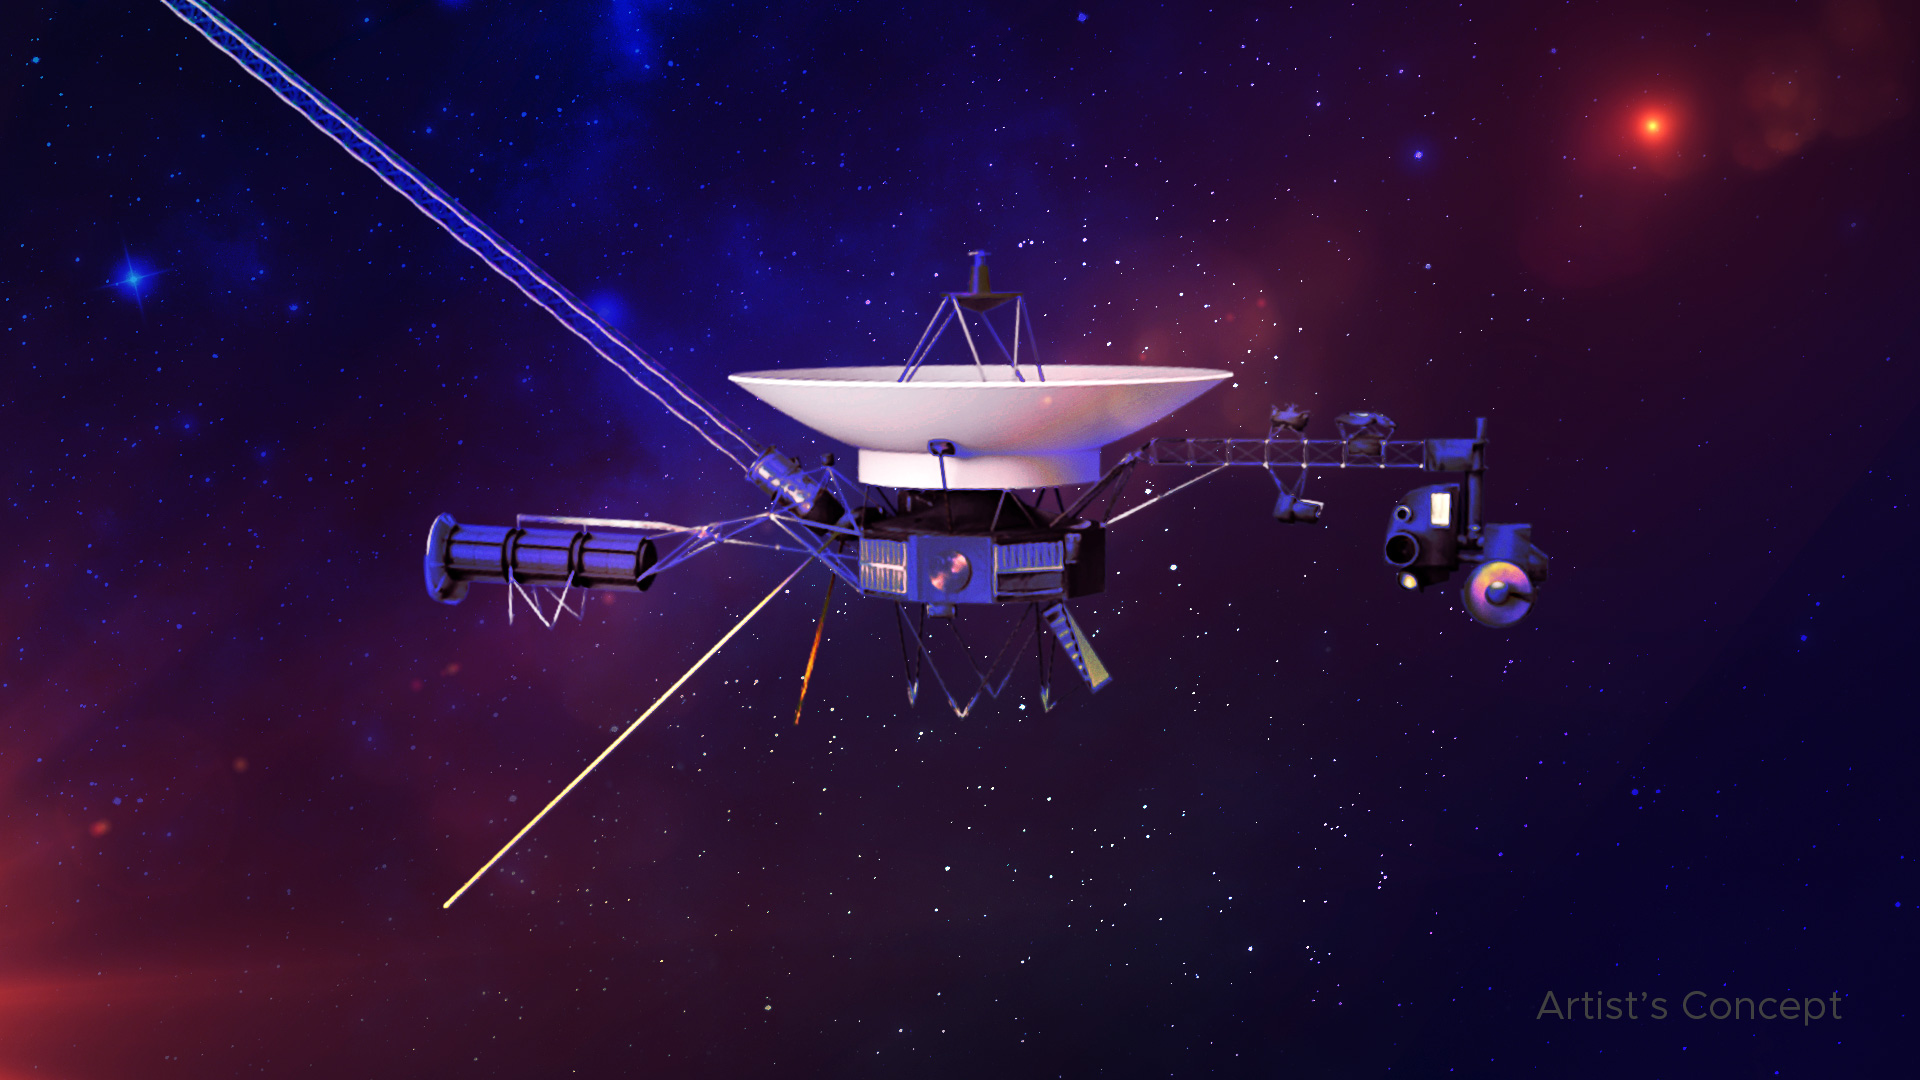 Concepto artístico de la nave espacial Voyager.